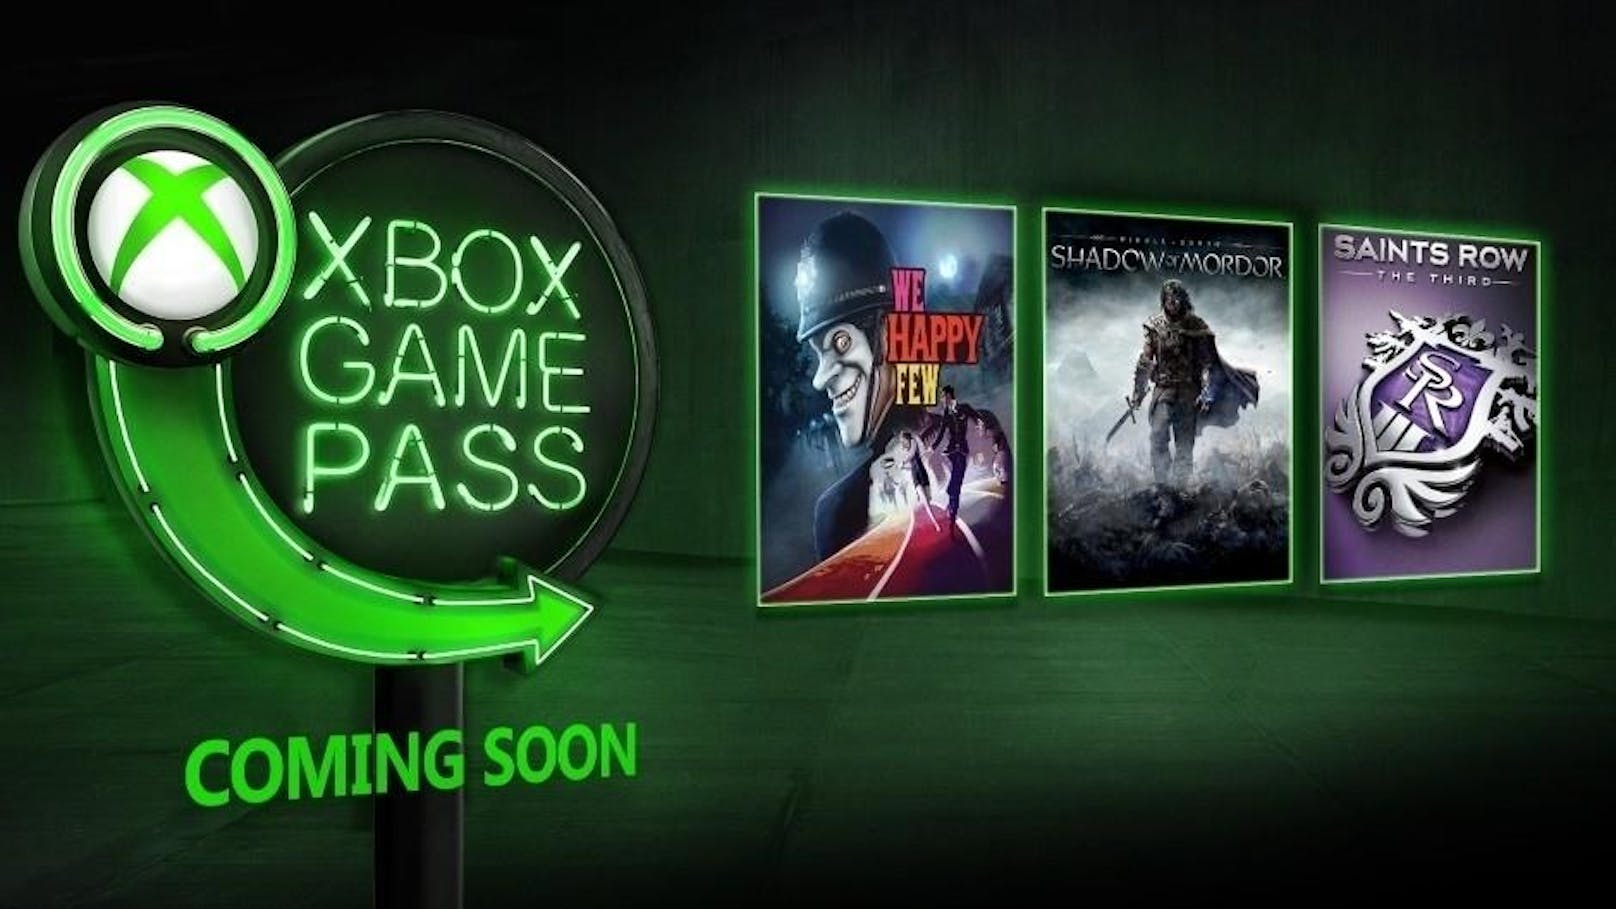  <a href="https://www.heute.at/s/konsolen-neuheit-der-xbox-game-pass-im-test-55317293" target="_blank">Xbox Game Pass</a>